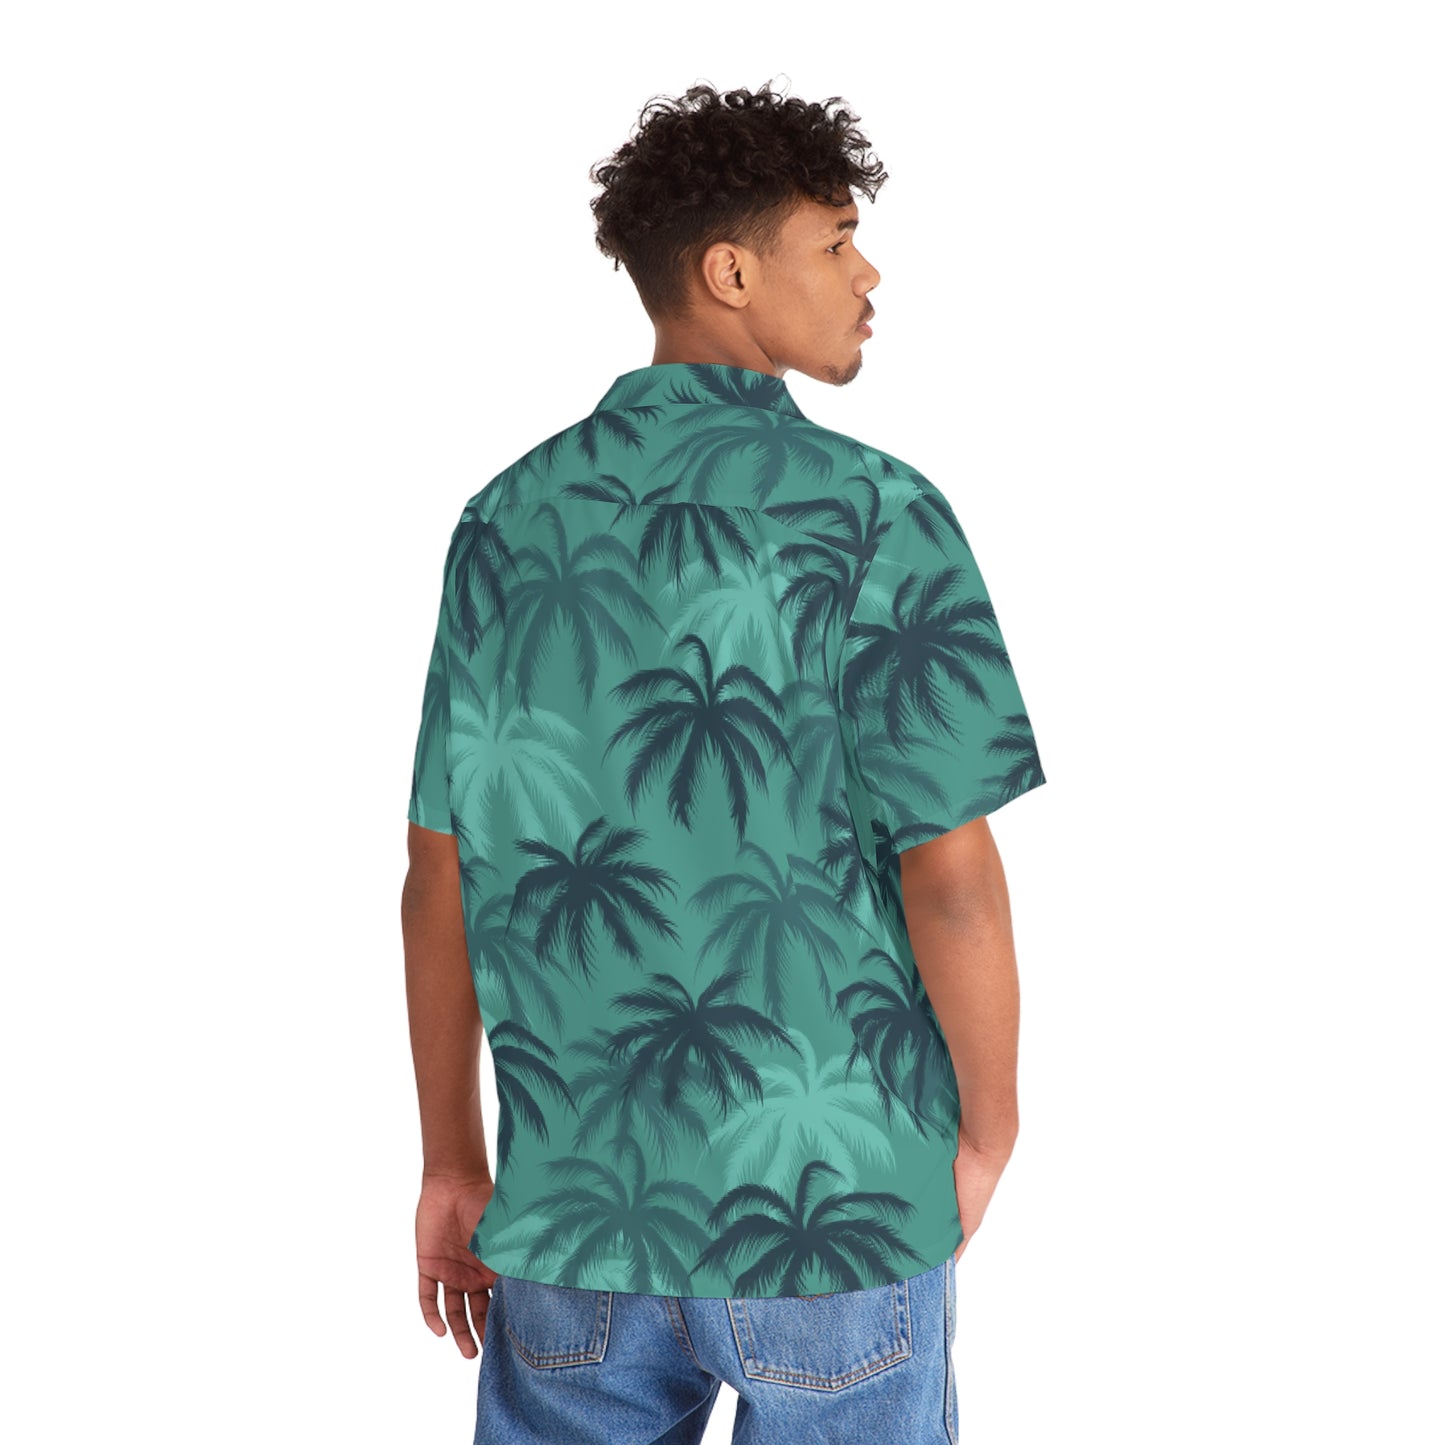 Tommy V LO RES "Hawaiian" shirt